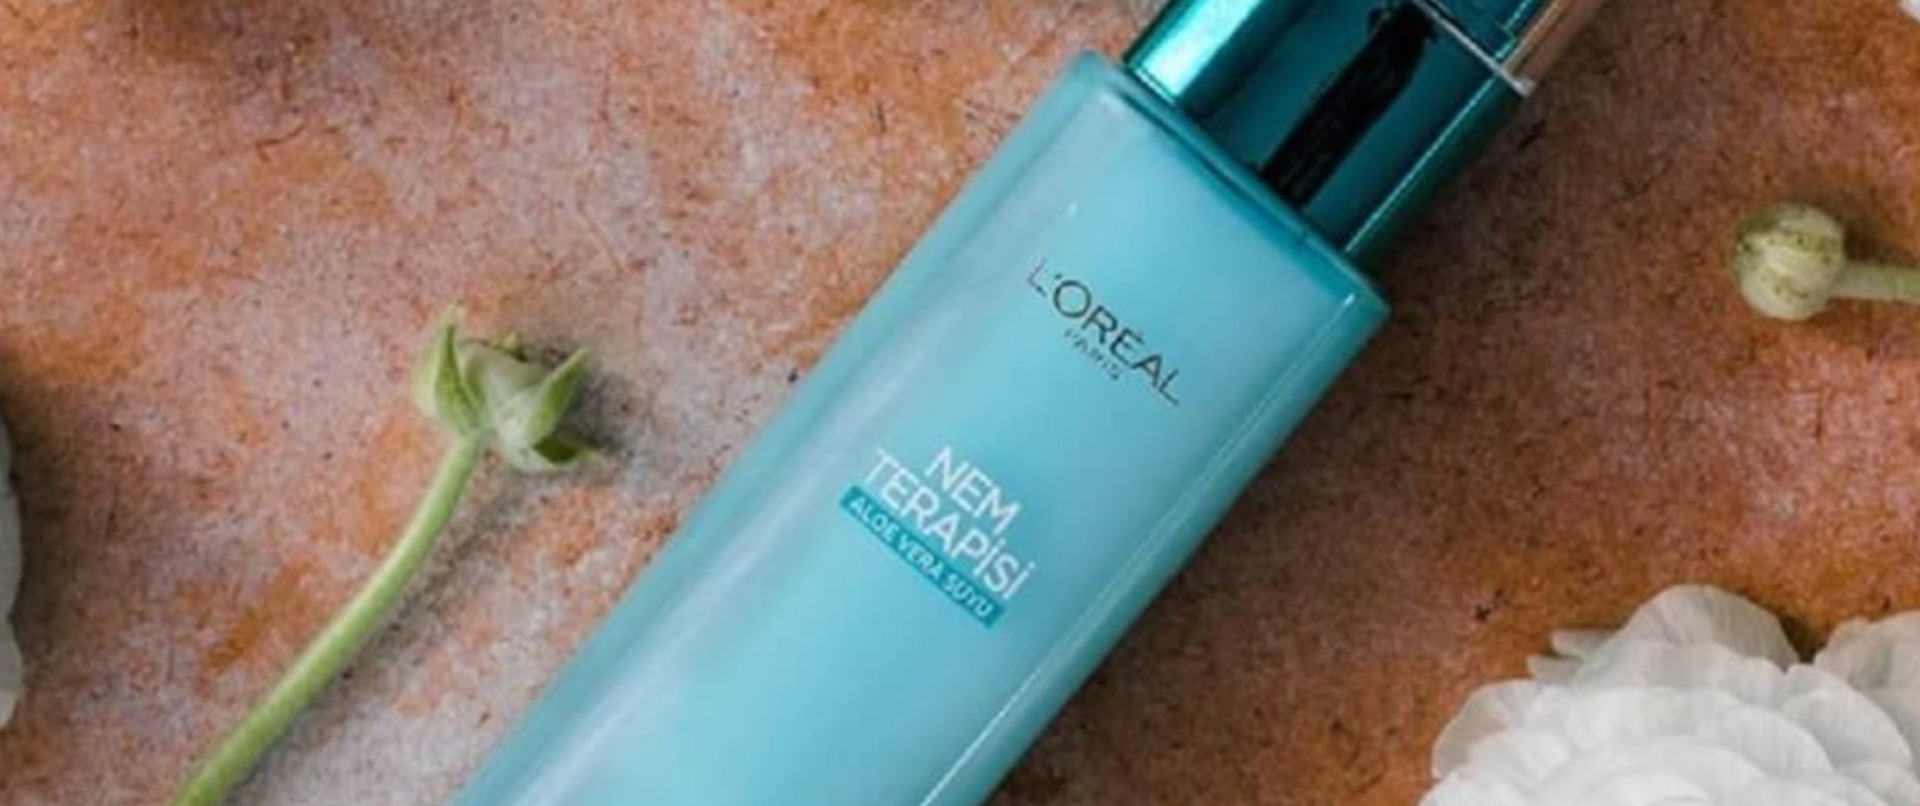 L'Oréal Paris Nem Terapisi Aloe Vera Suyu Kullananlar ve Yorumları